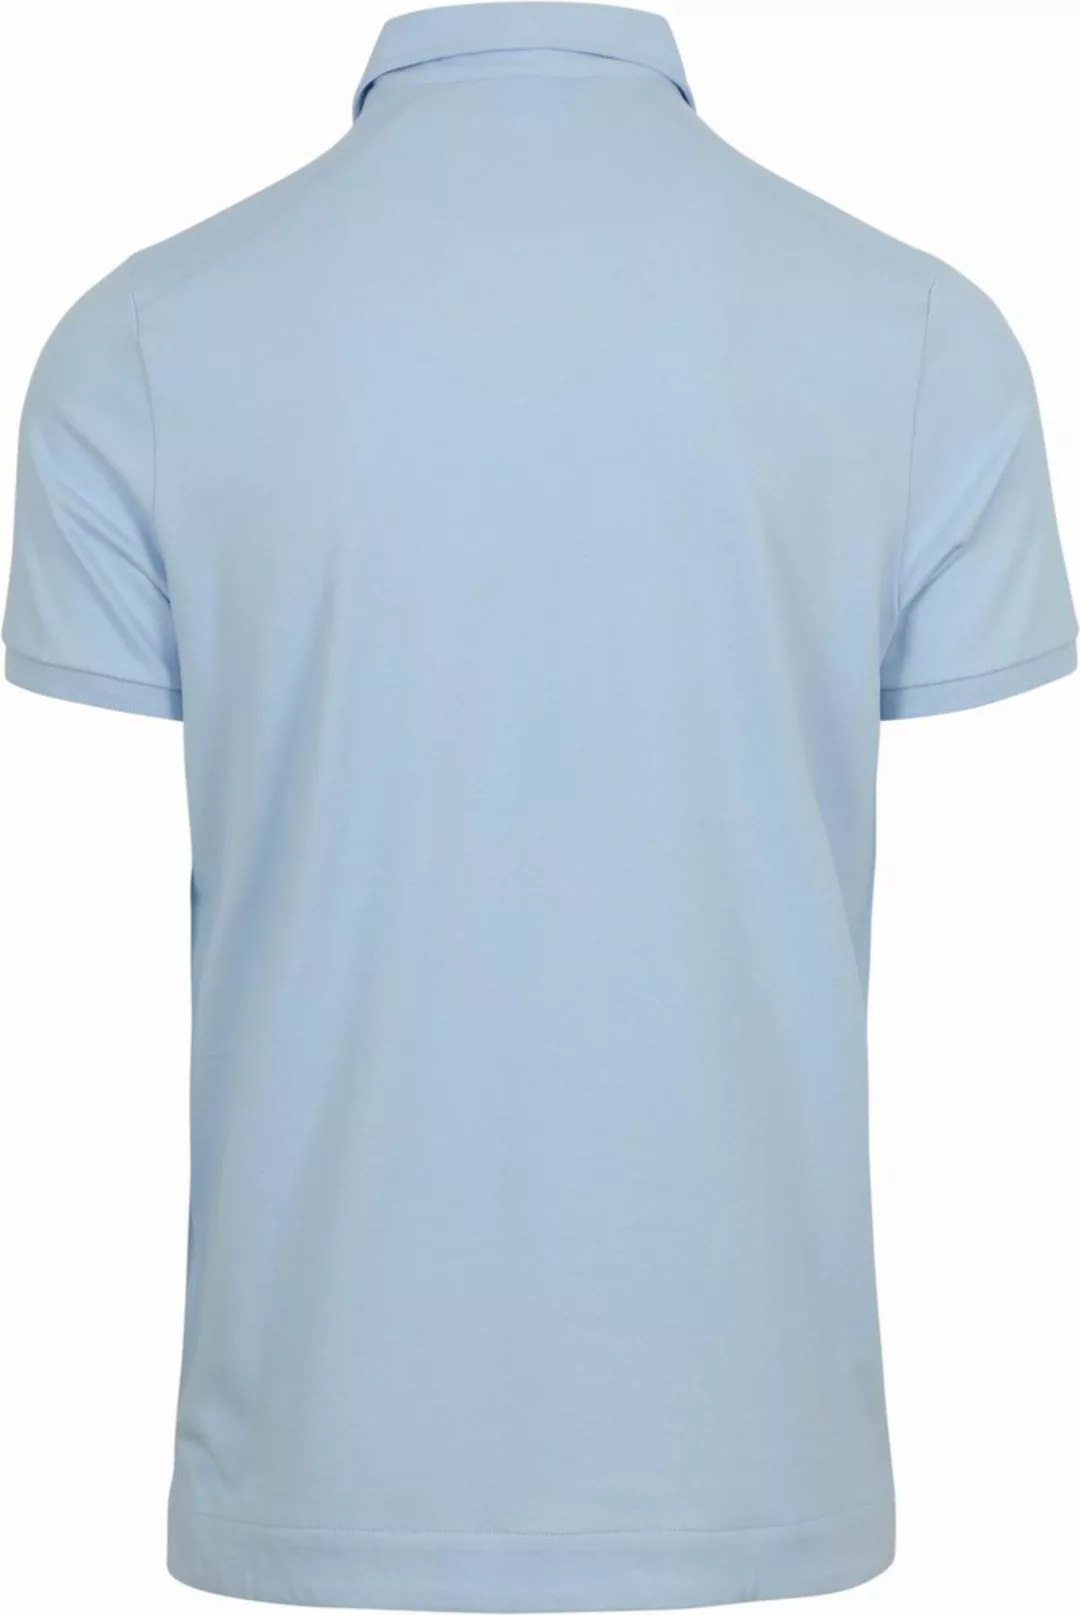 Blue Industry Piqué Poloshirt Hellblau  - Größe M günstig online kaufen